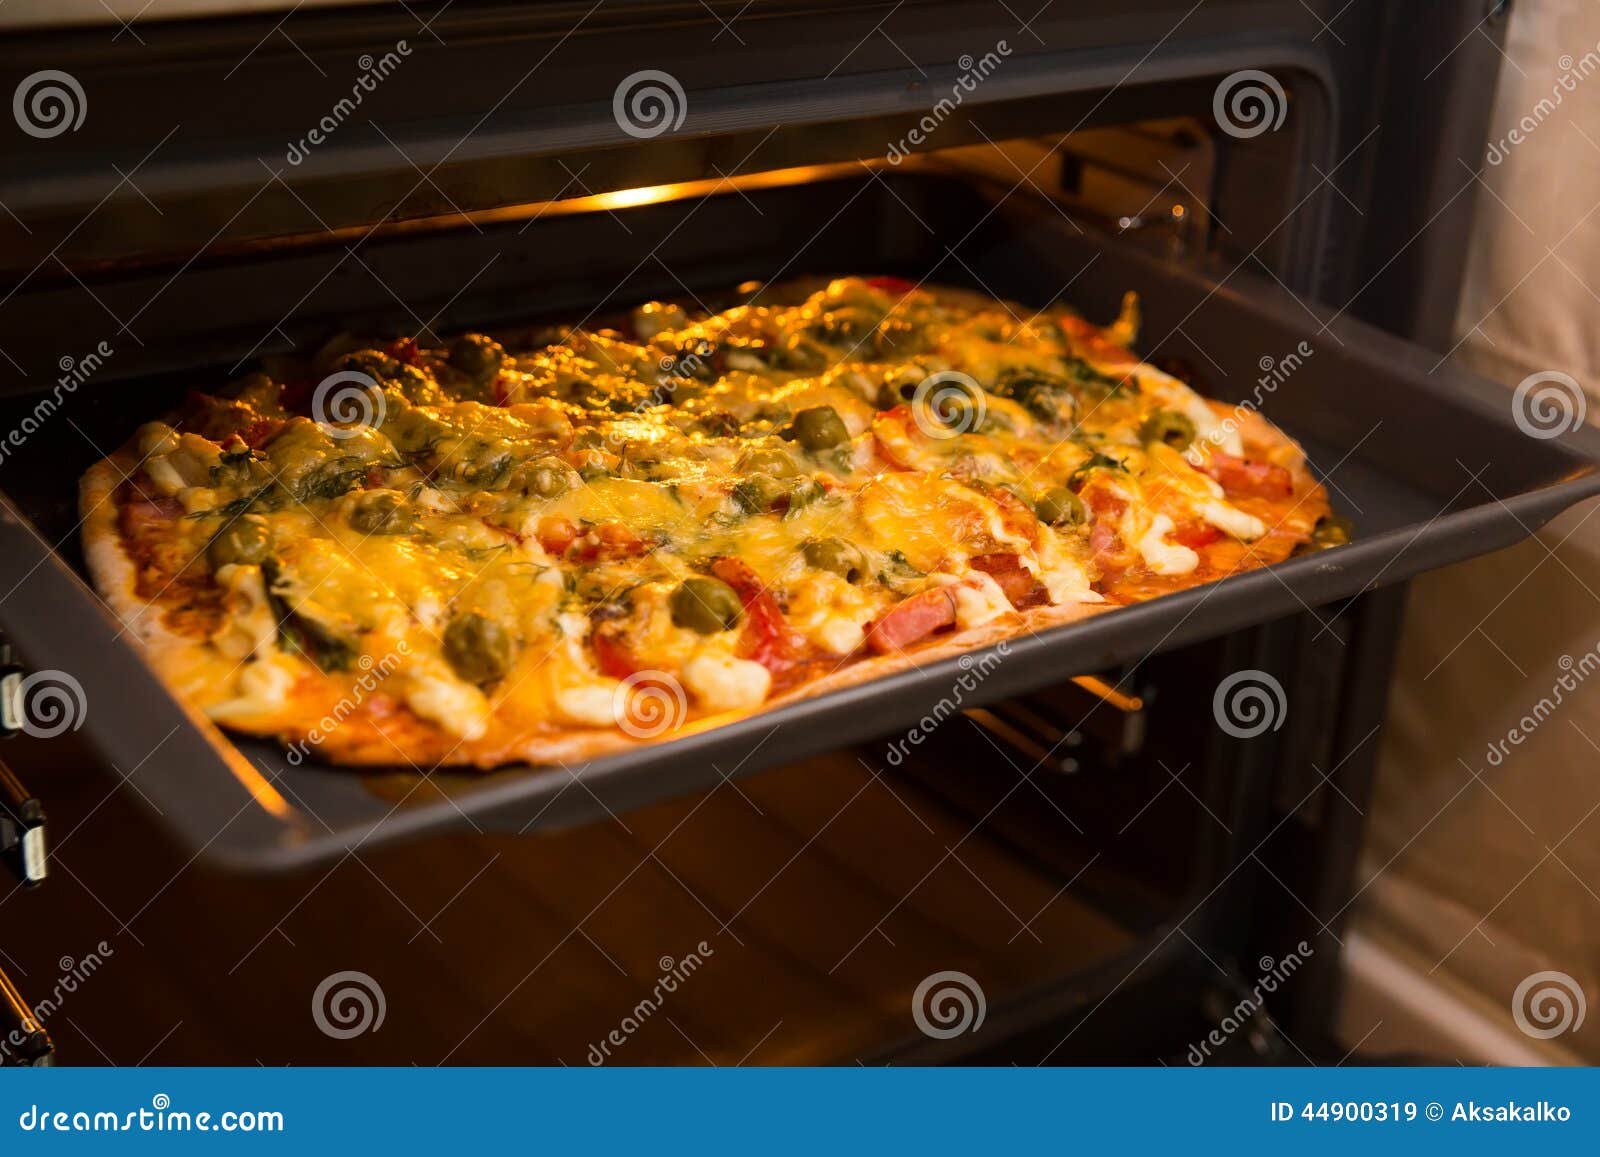 что входит в домашнюю пиццу в духовке фото 28